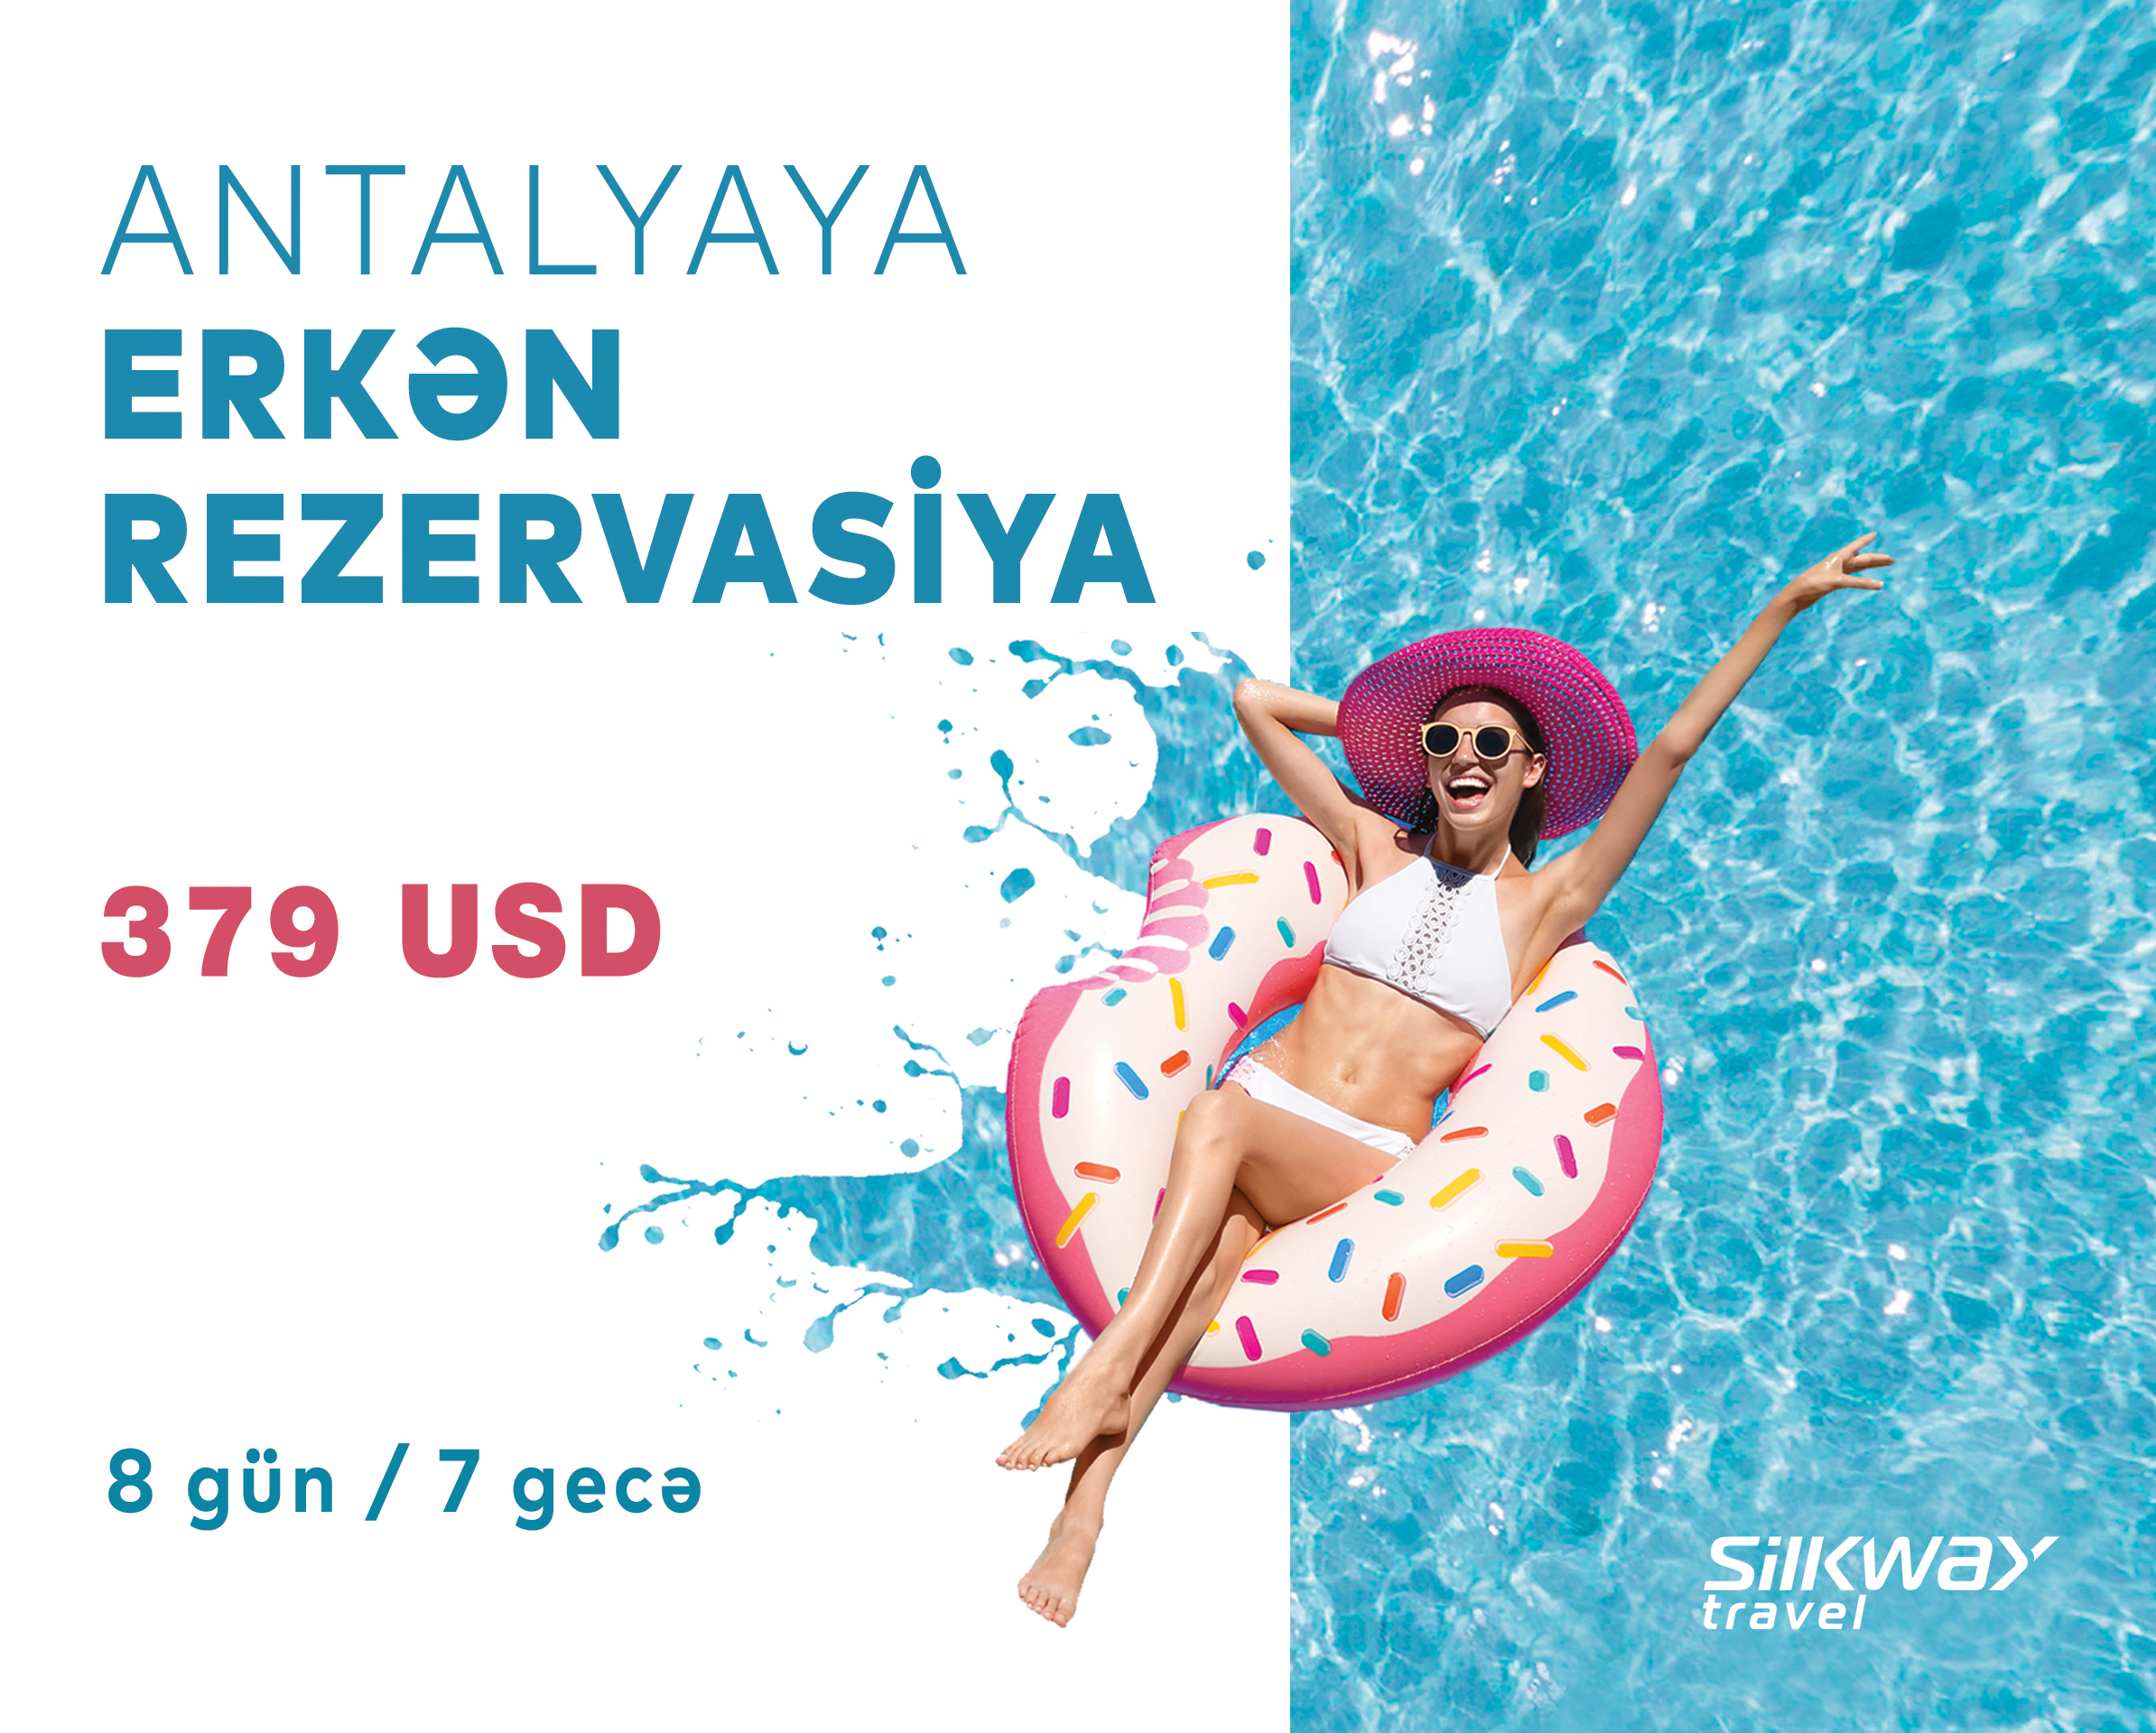 Выгодное предложение от Silk Way Travel: Турпакет в Анталию всего за 379 USD